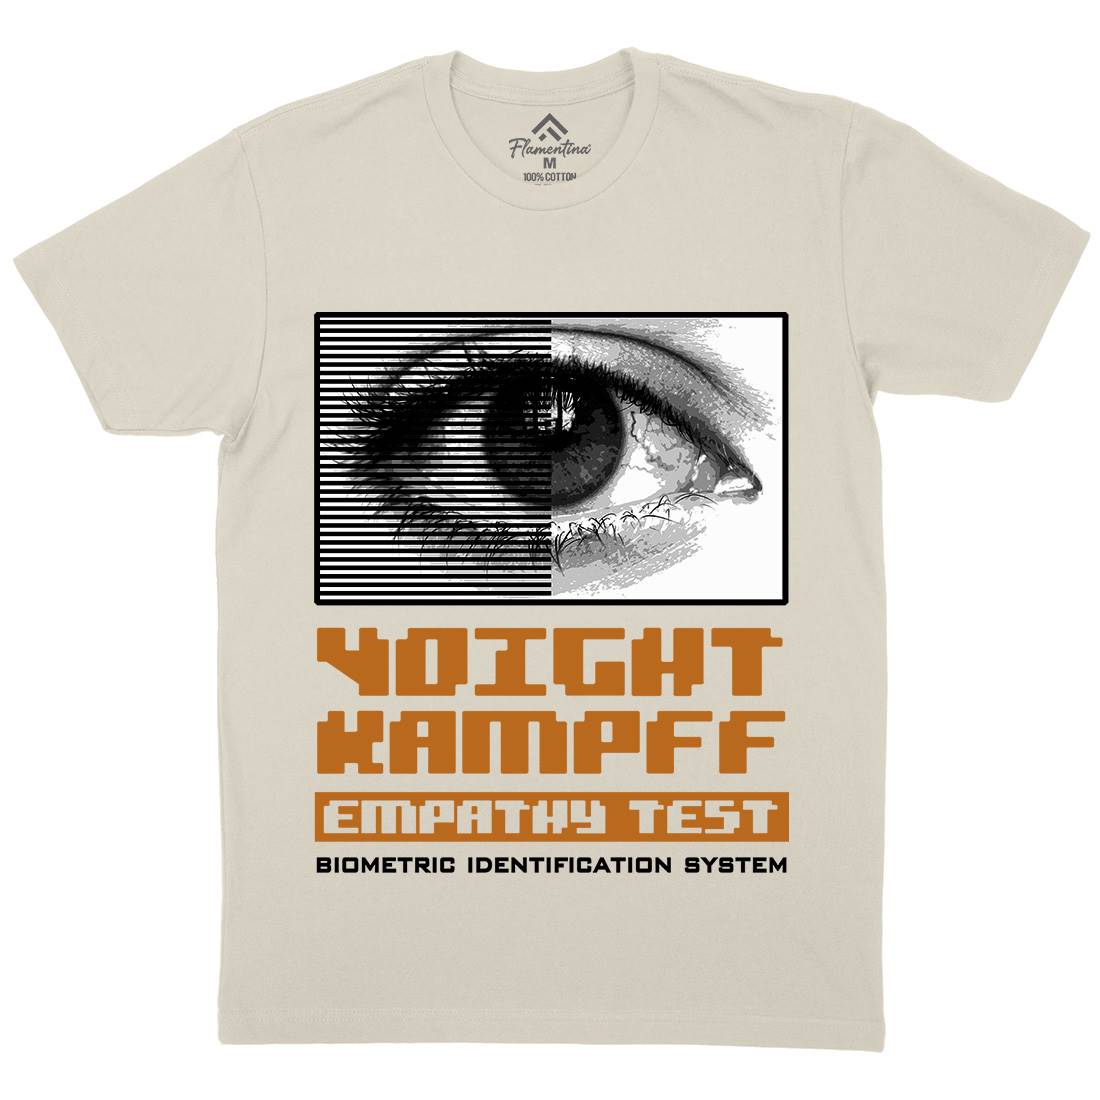 Voight Kampff Mens Organic Crew Neck T-Shirt Space D405